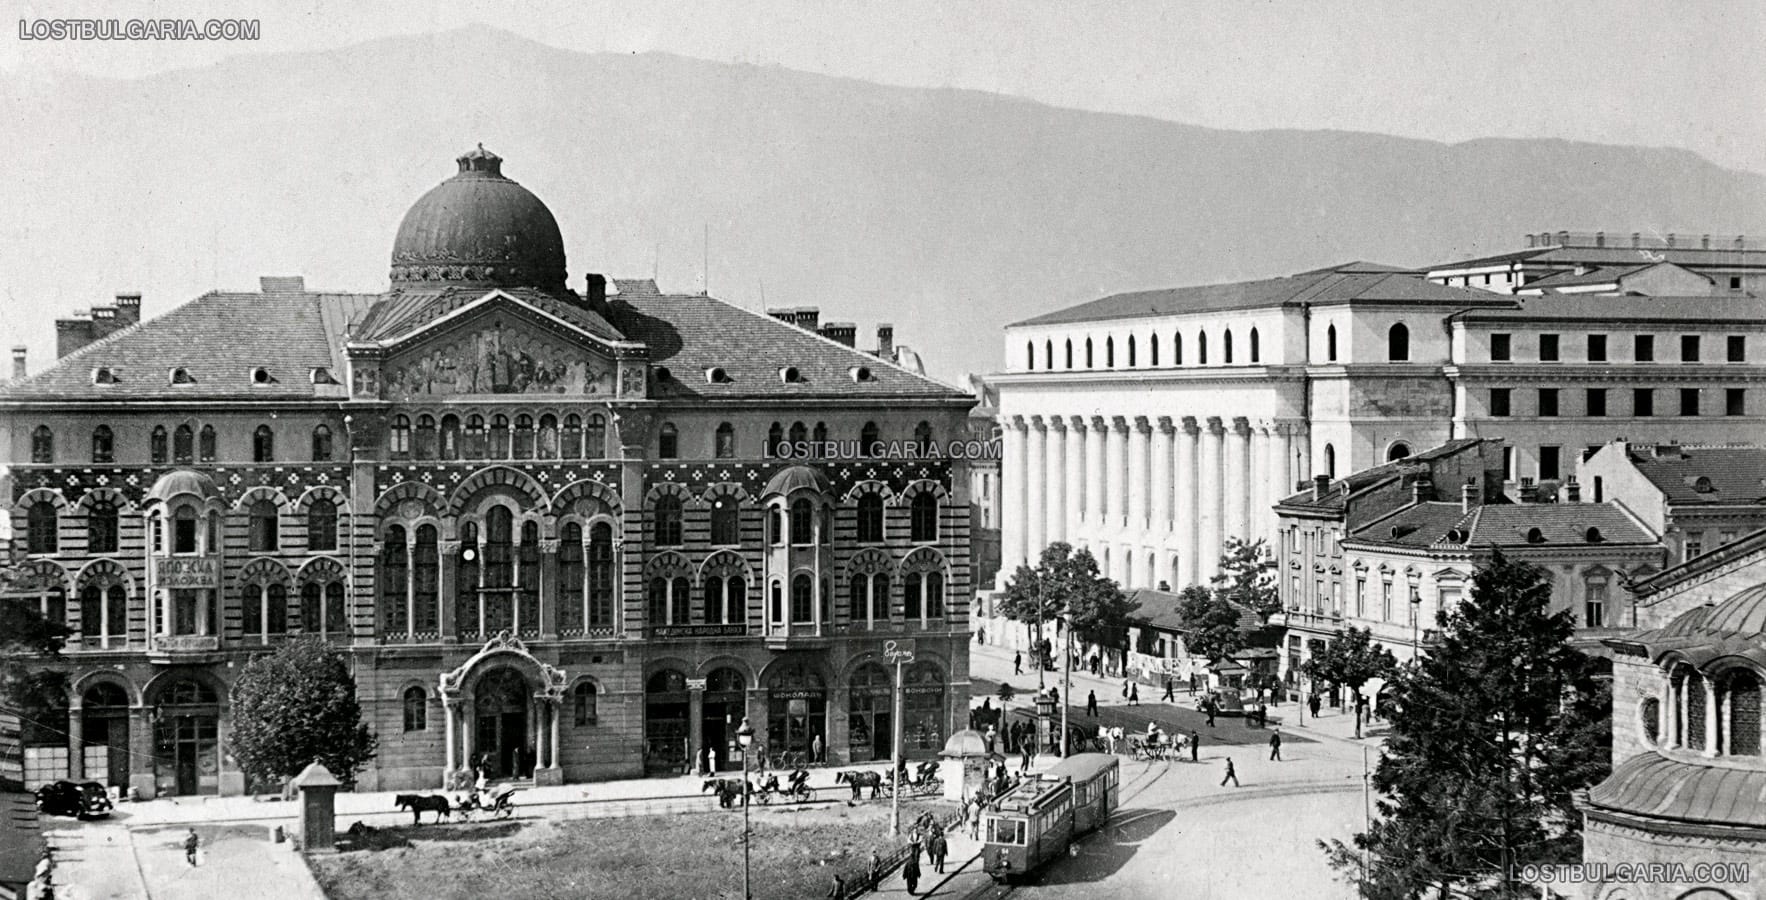 Площад "Света Неделя" и сградата на Духовната академия с несъществуващите днес купол и фронтон на фасадата (разрушени при англо-американските бомбардировки през 1944 г.), Съдебната палата (в строеж) и бул. "Витоша", София, вероятно 1941-42 г.